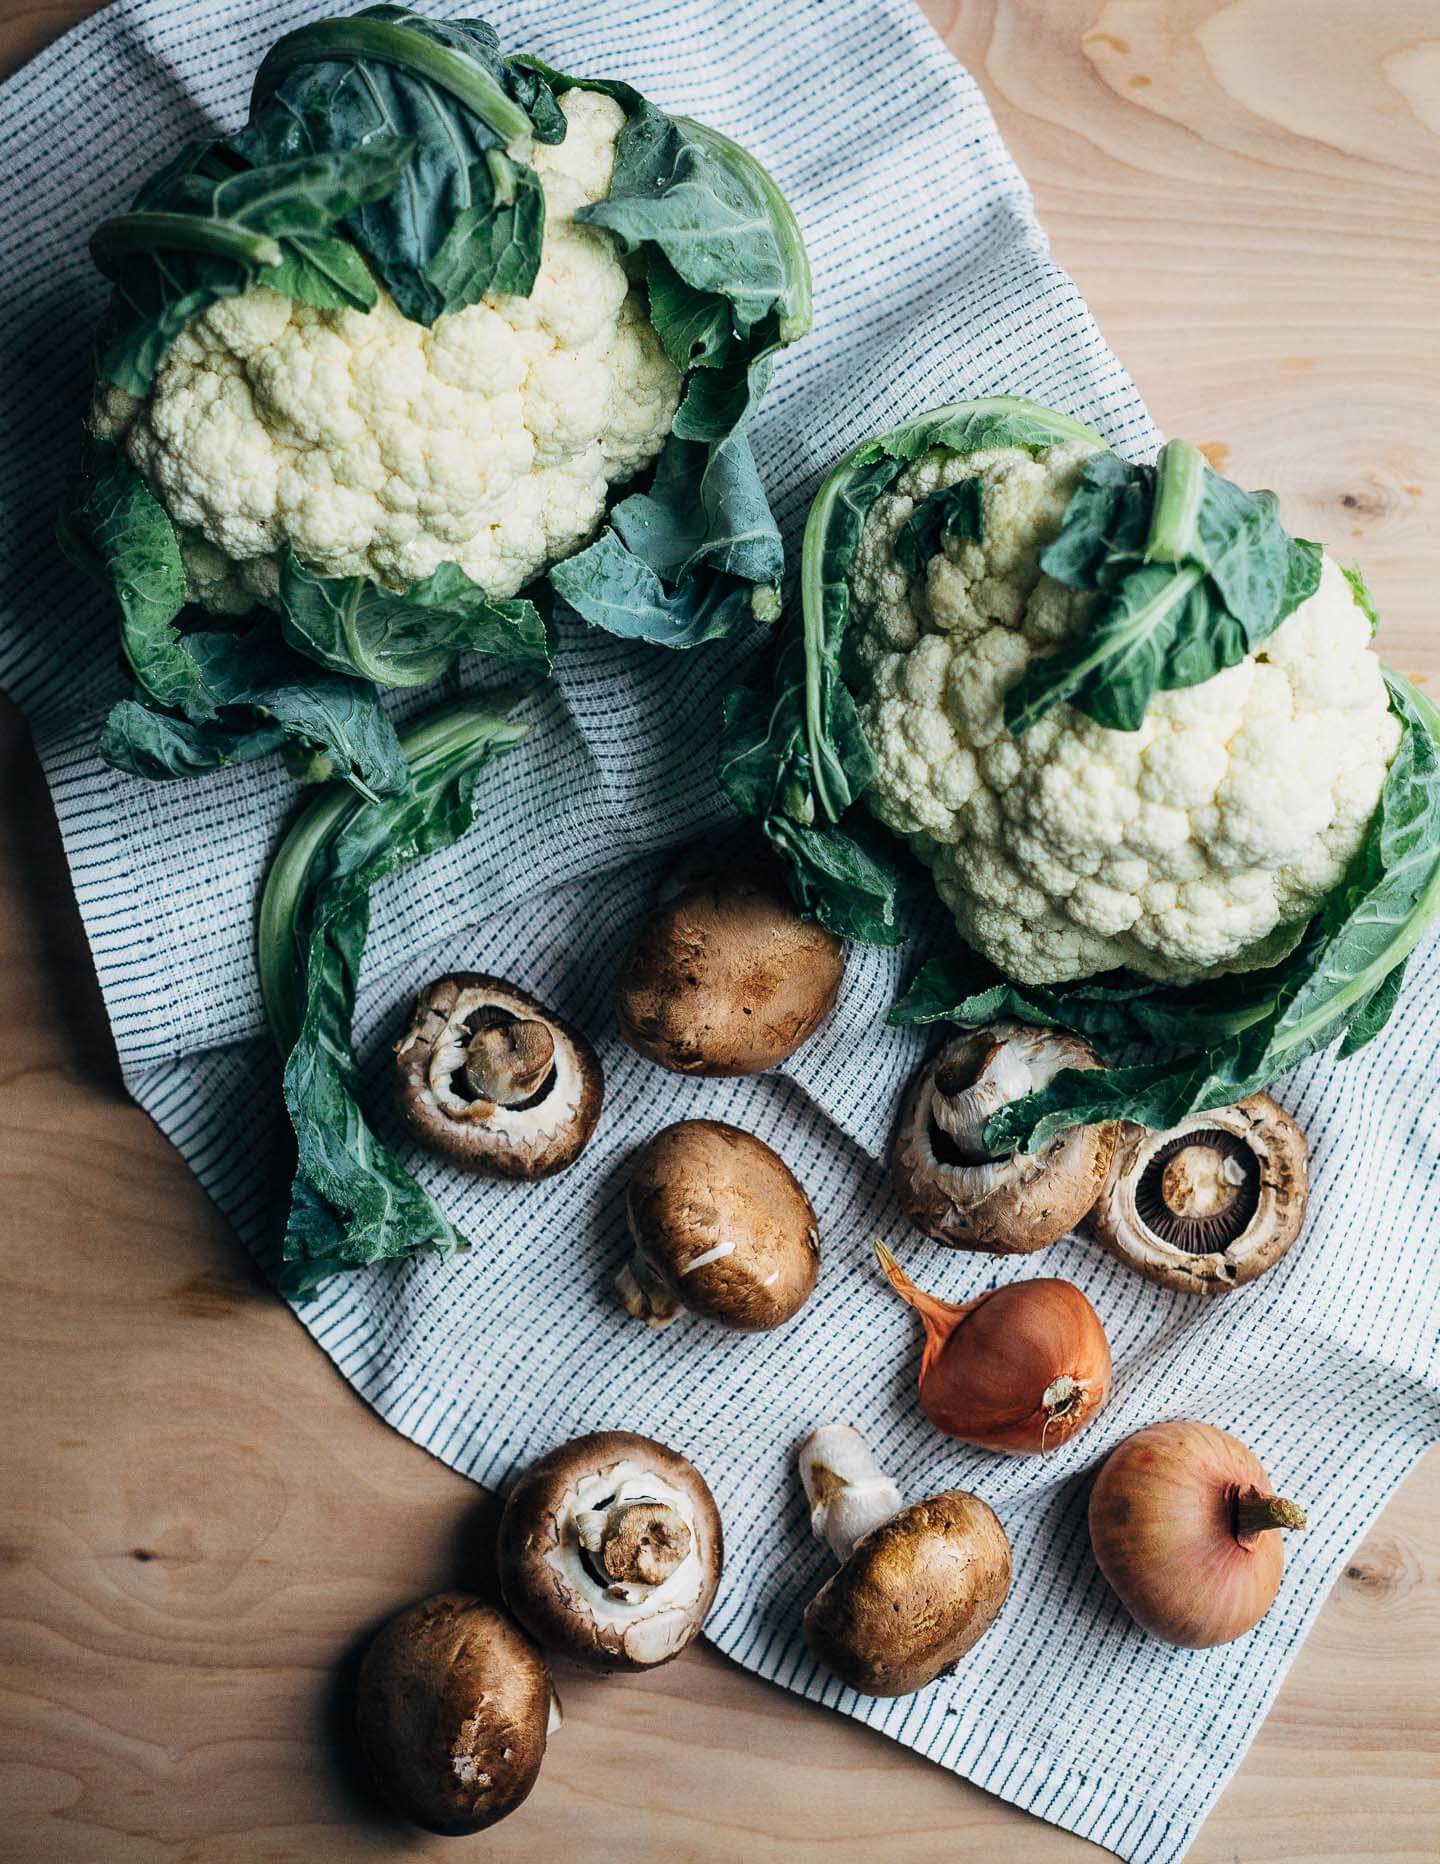 Cauliflower, mushrooms, and shallots for cauliflower puree. 